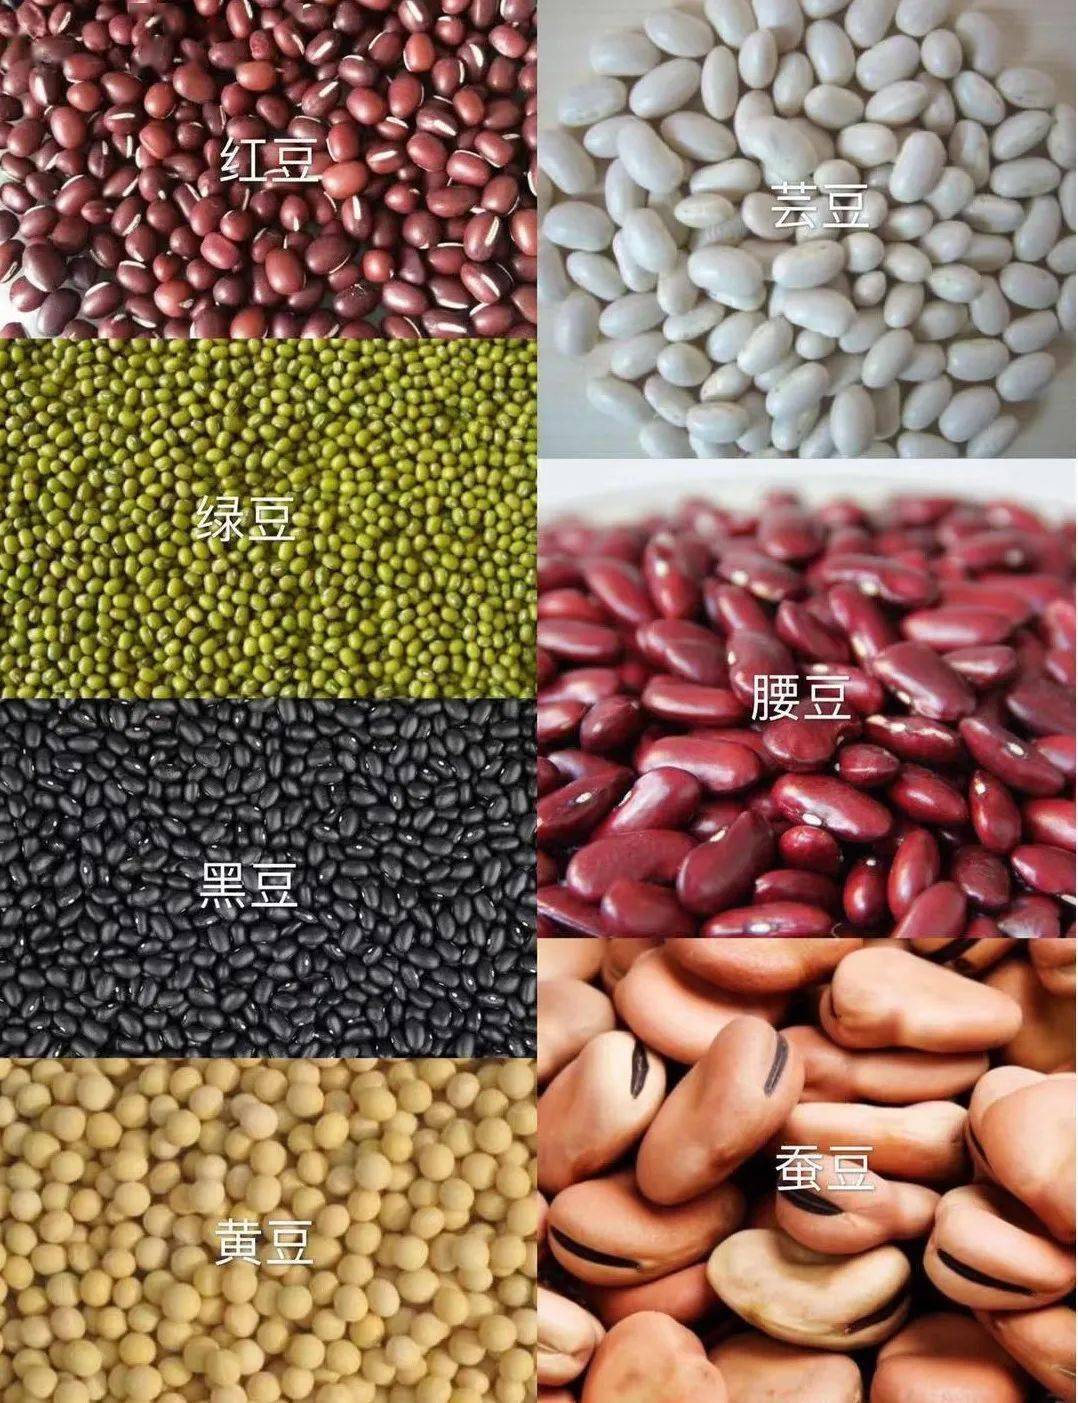 所有豆子品种名称图片图片